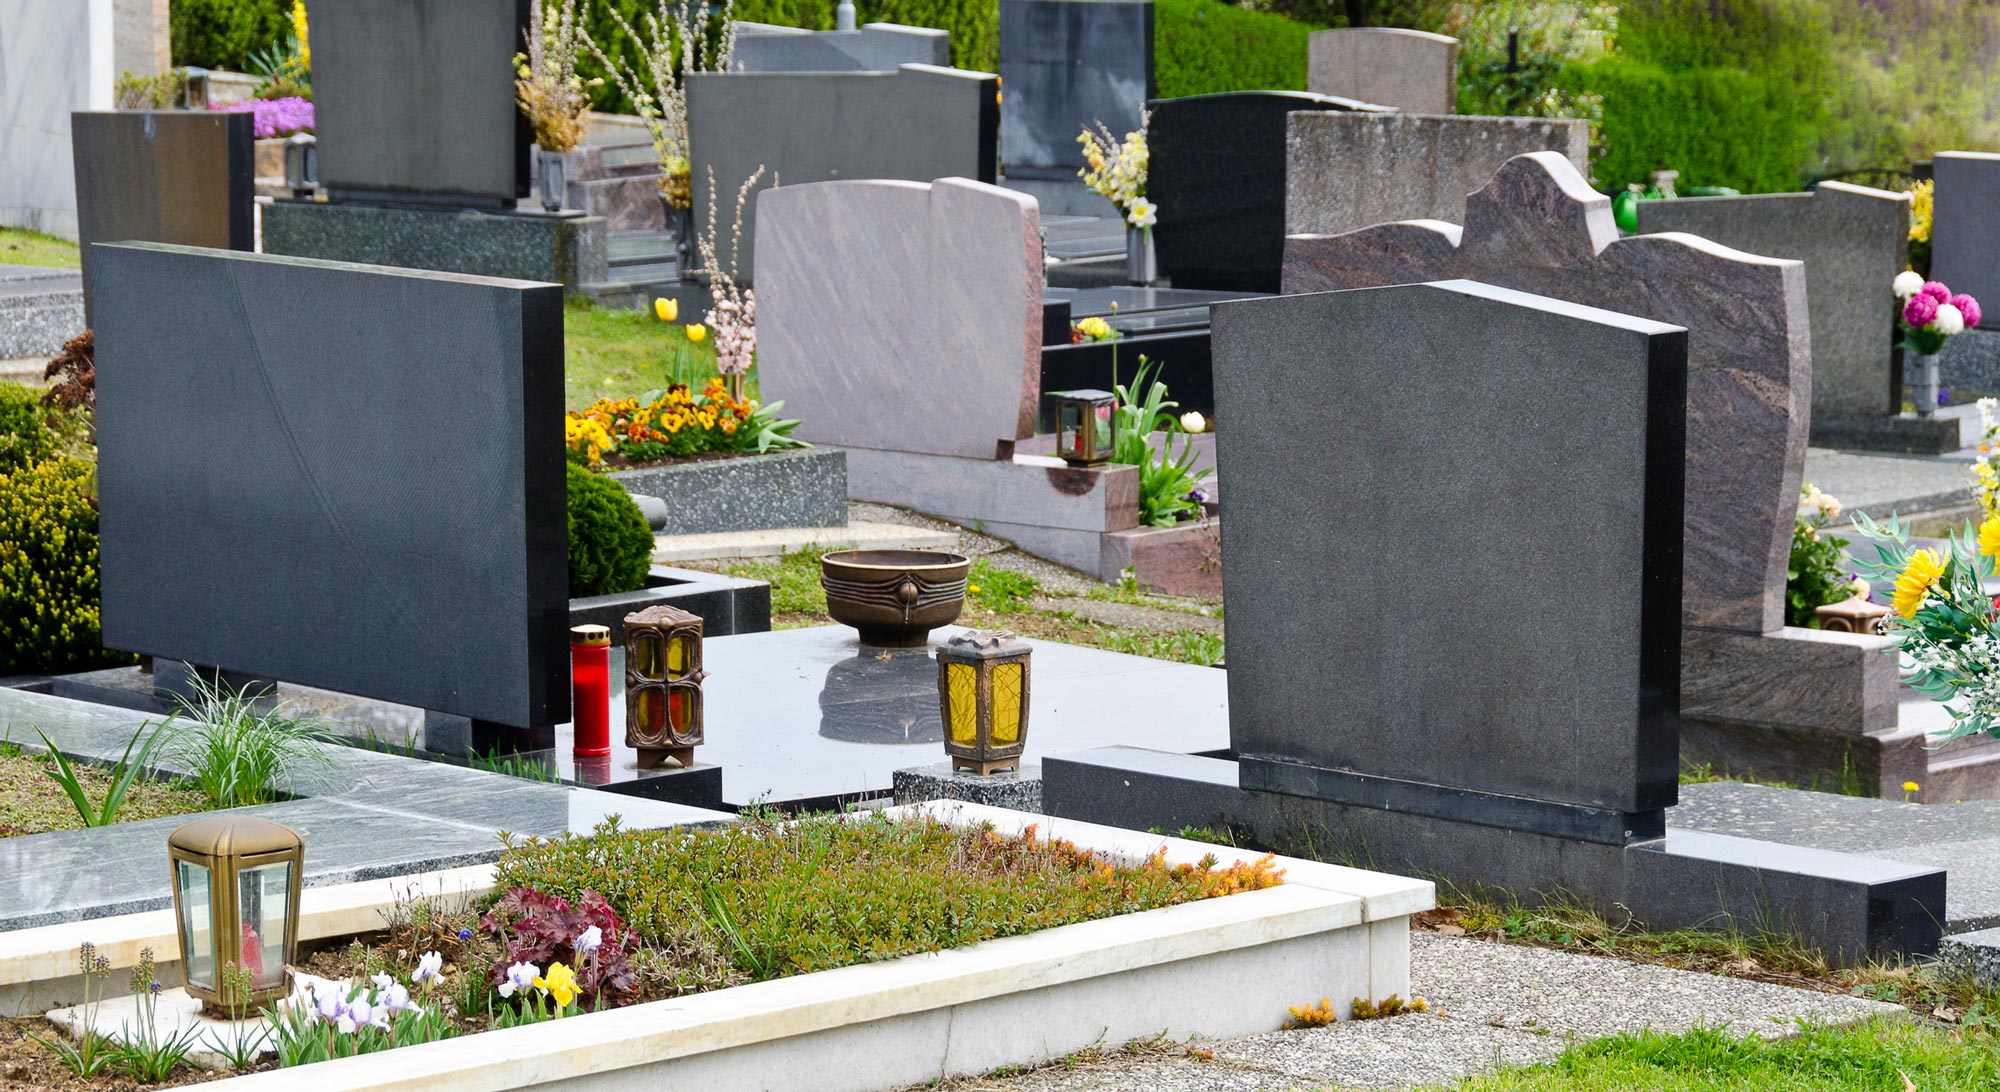 Dieses Jahr hat Gatra in einem Friedhof im Tösstal 48 Grabsteine aus der Erde gehoben und zum Recycling gebracht.